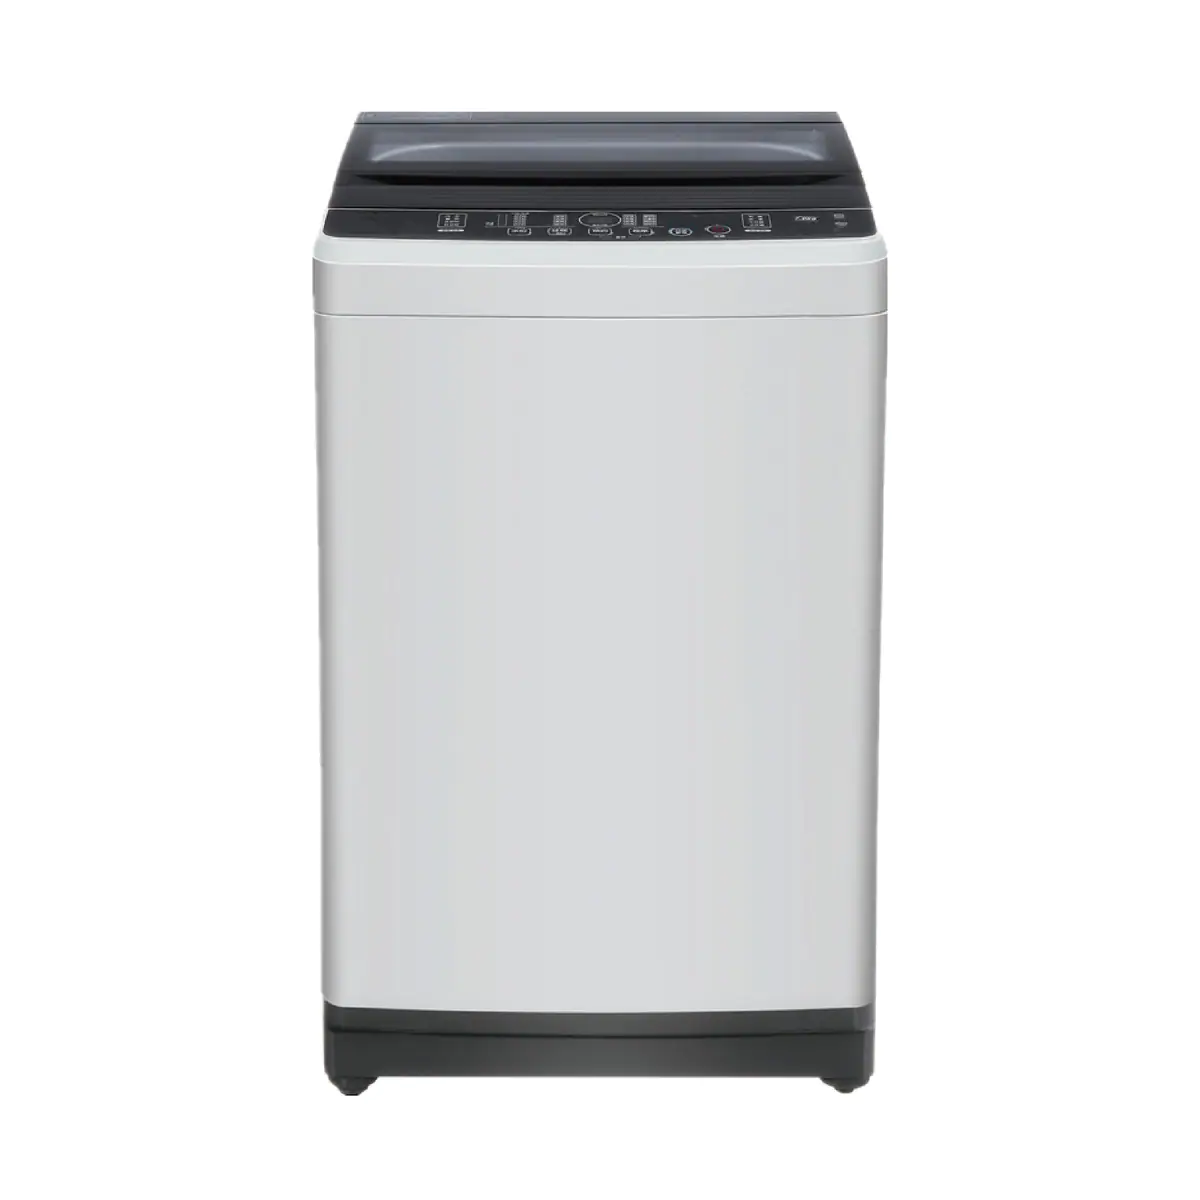 KANEDA [i]7KG上置式洗衣機 KT-072P 高水位